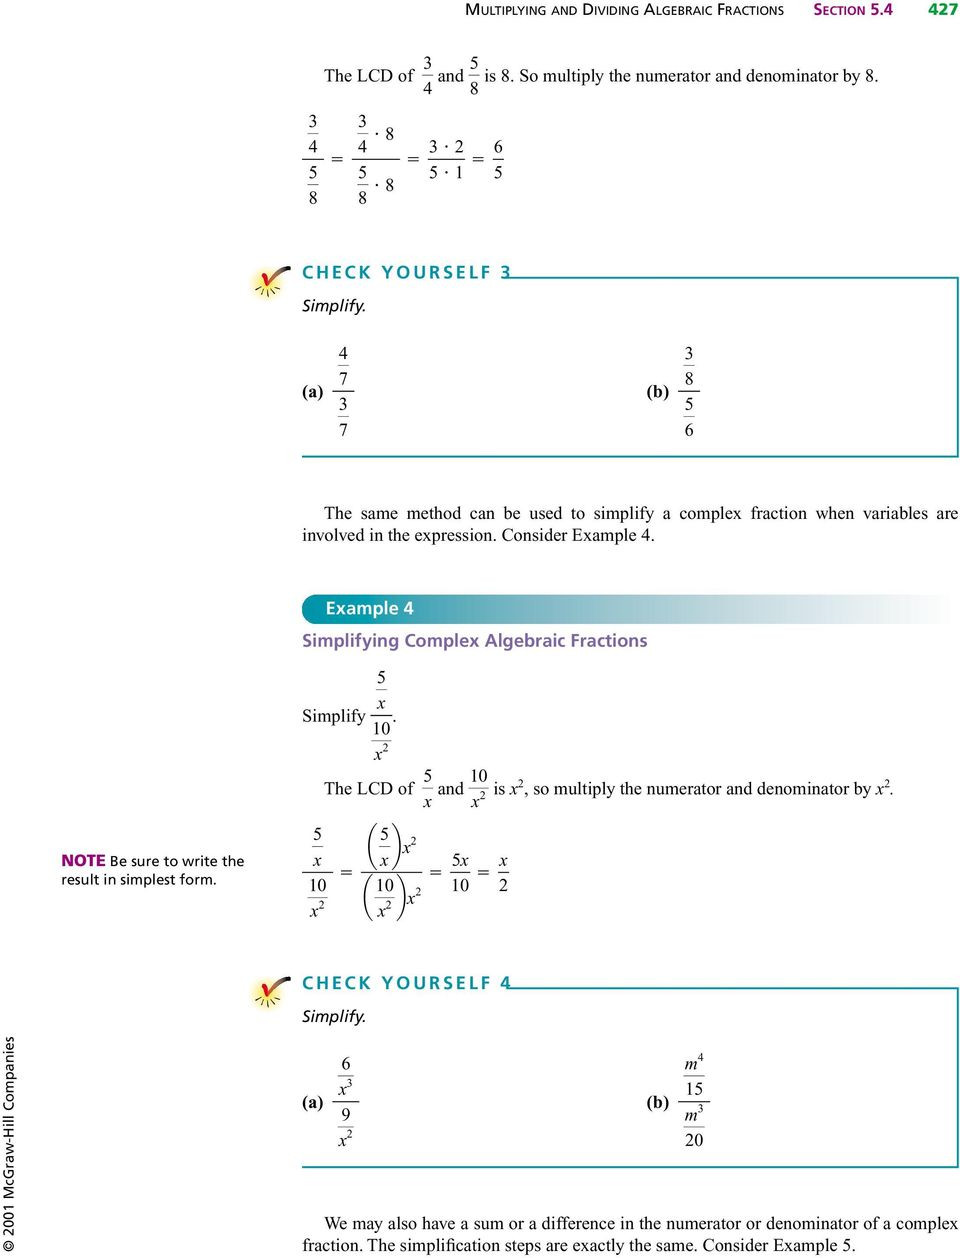 Simplifying Algebraic Fractions Worksheet Multiplying and Dividing Algebraic Fractions Pdf Free Download